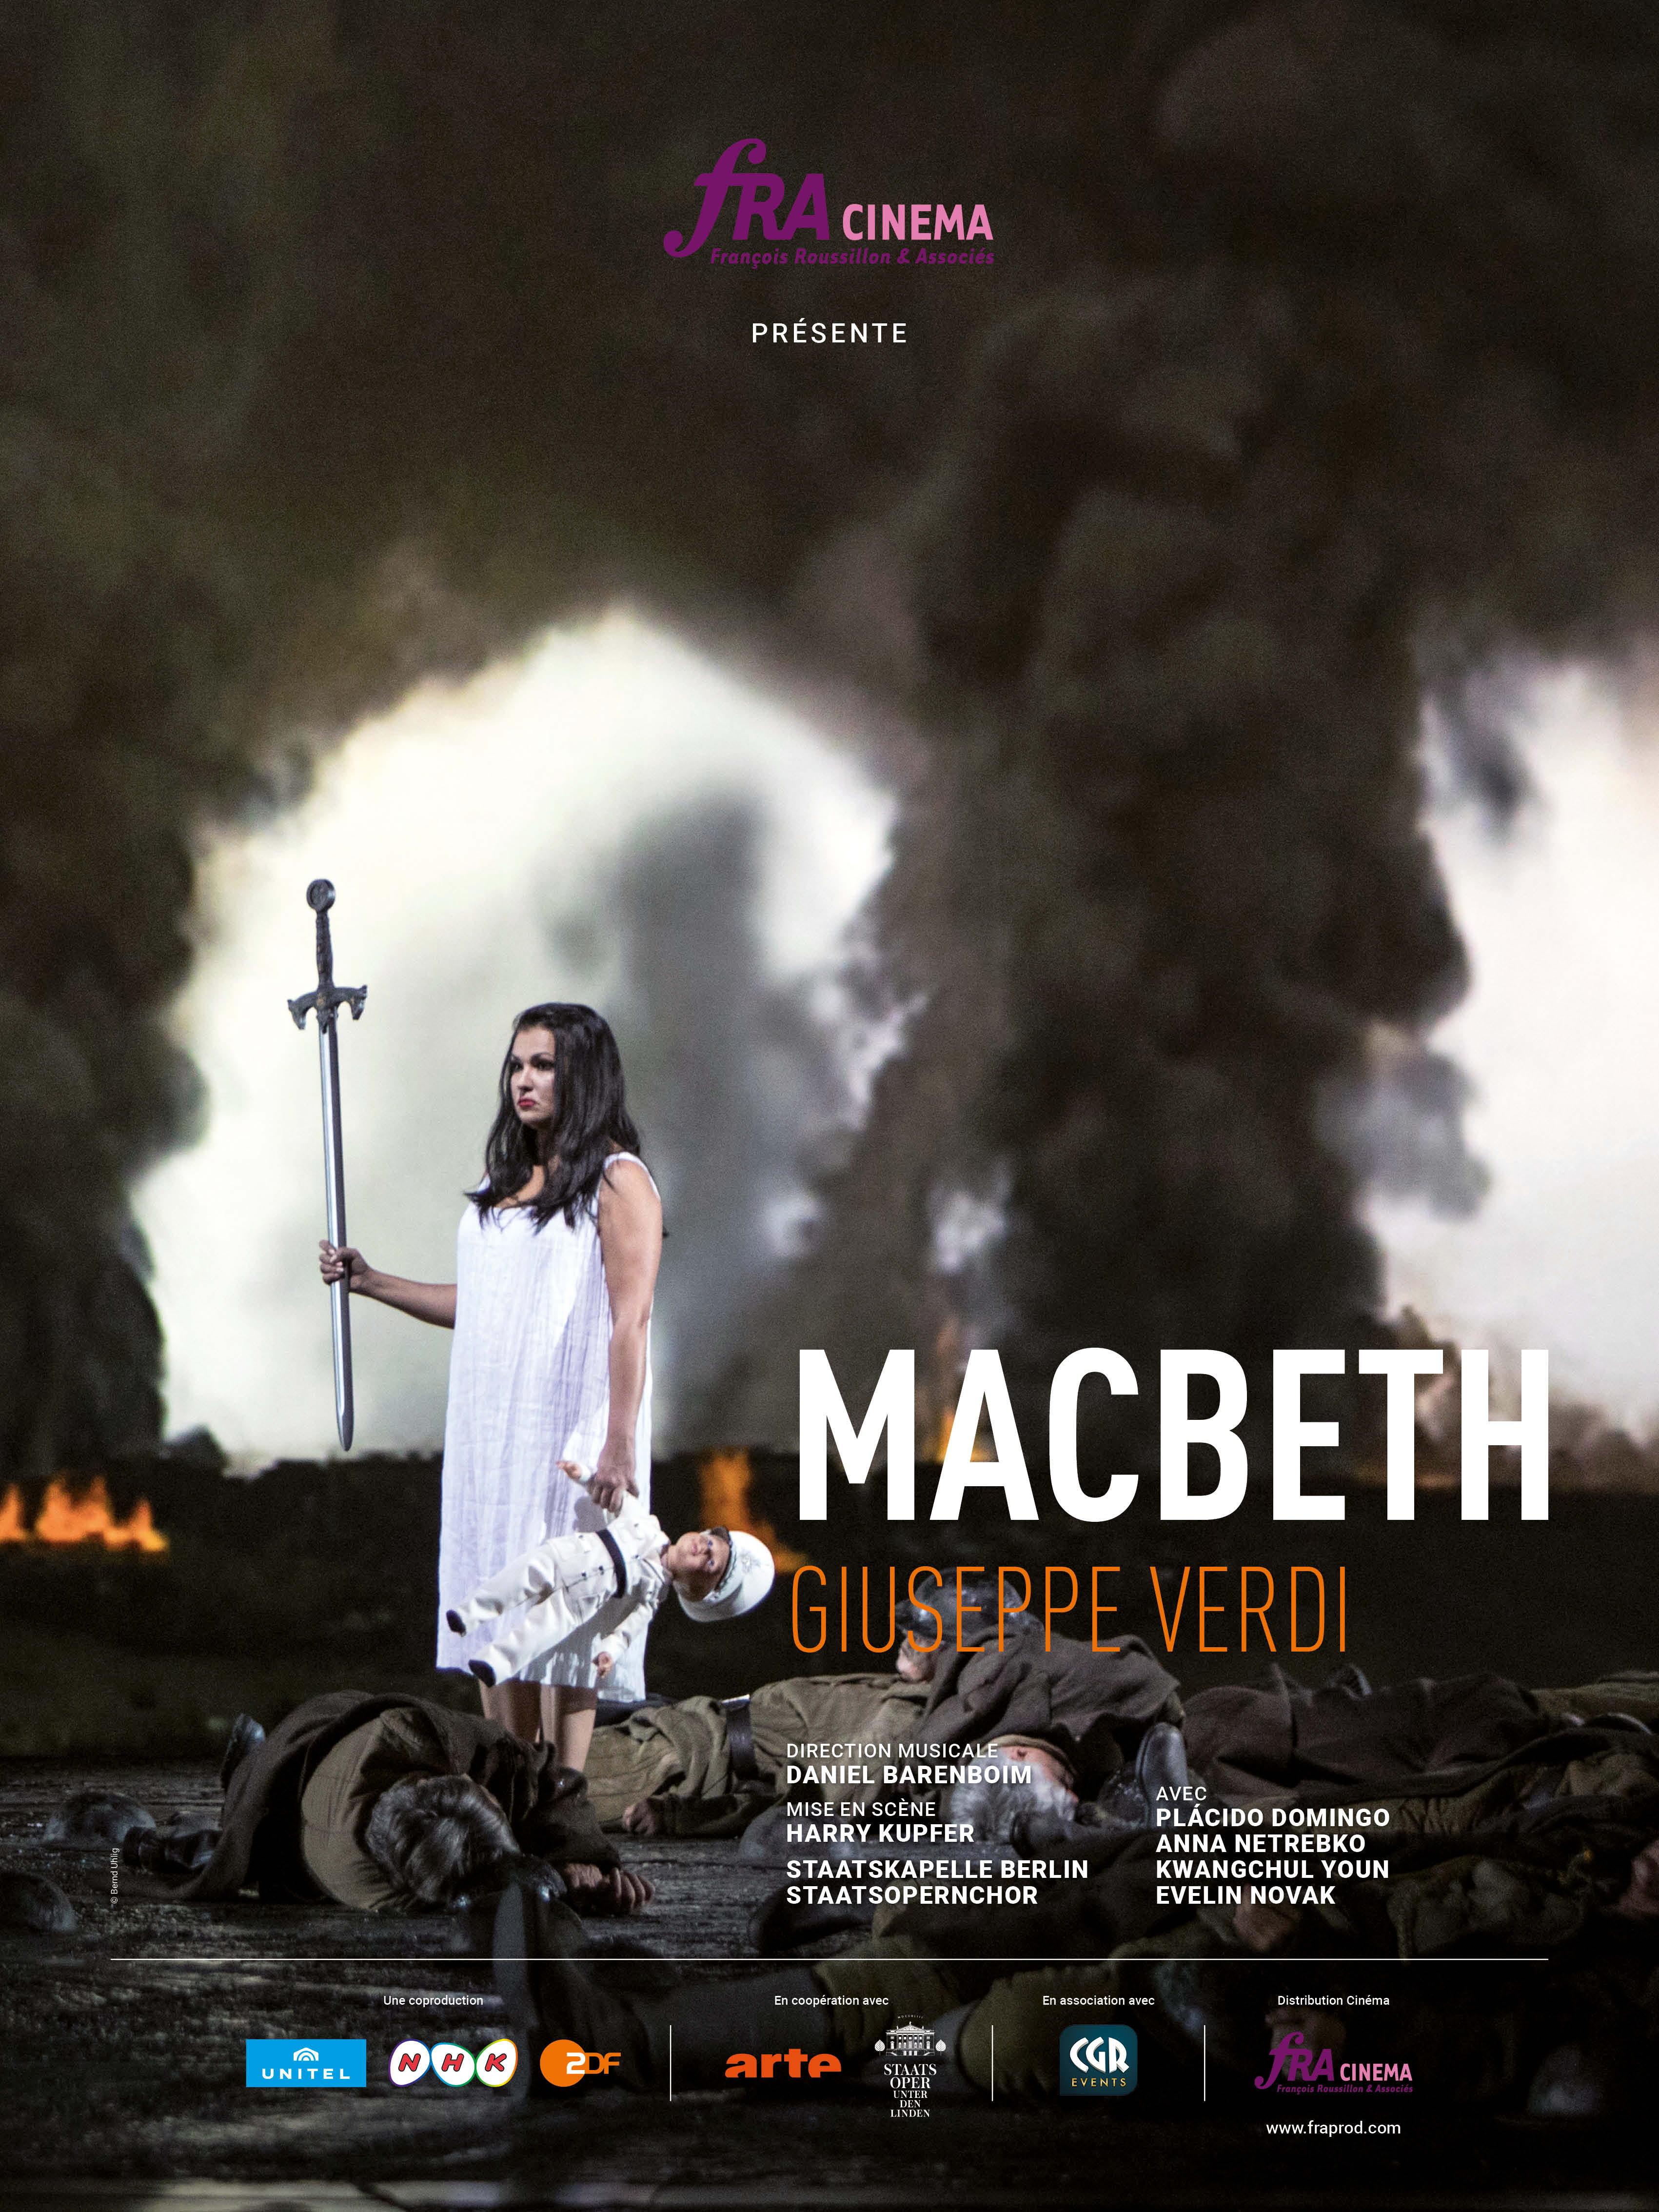 Macbeth (Staatsoper de Berlin - FRA Cinéma)